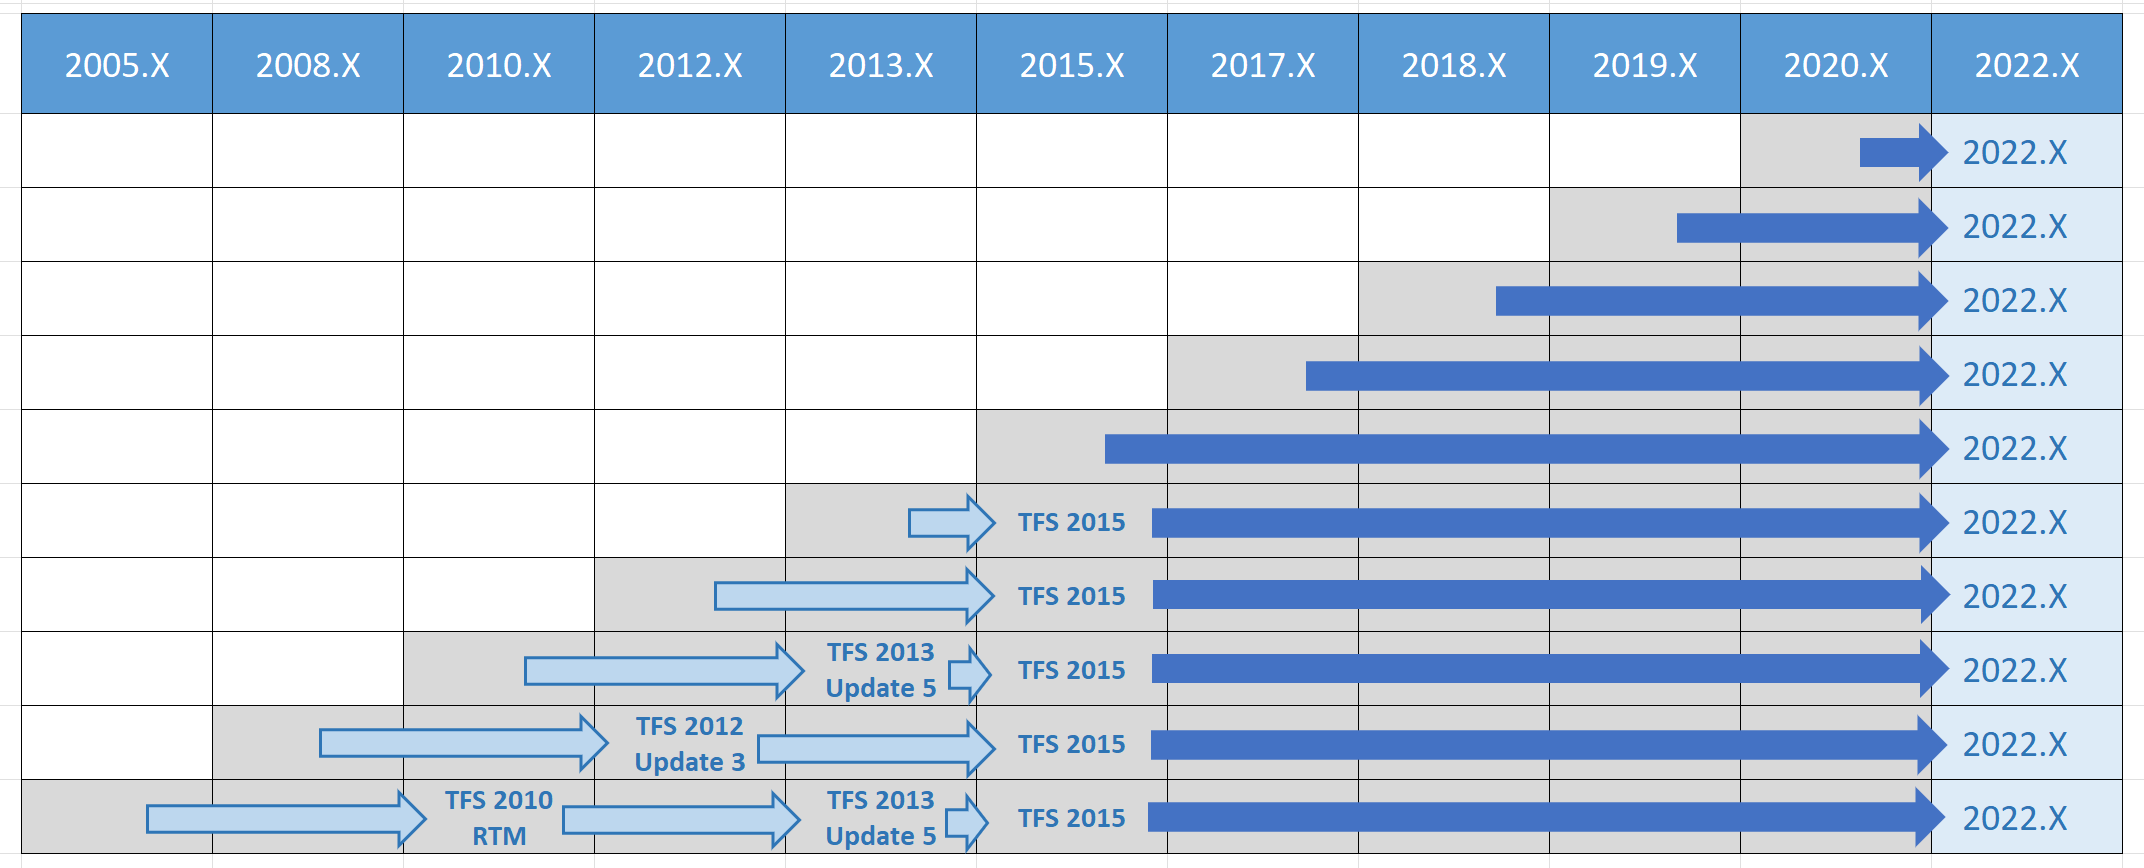 所有舊版的 Azure DevOps 2022 升級路徑矩陣。